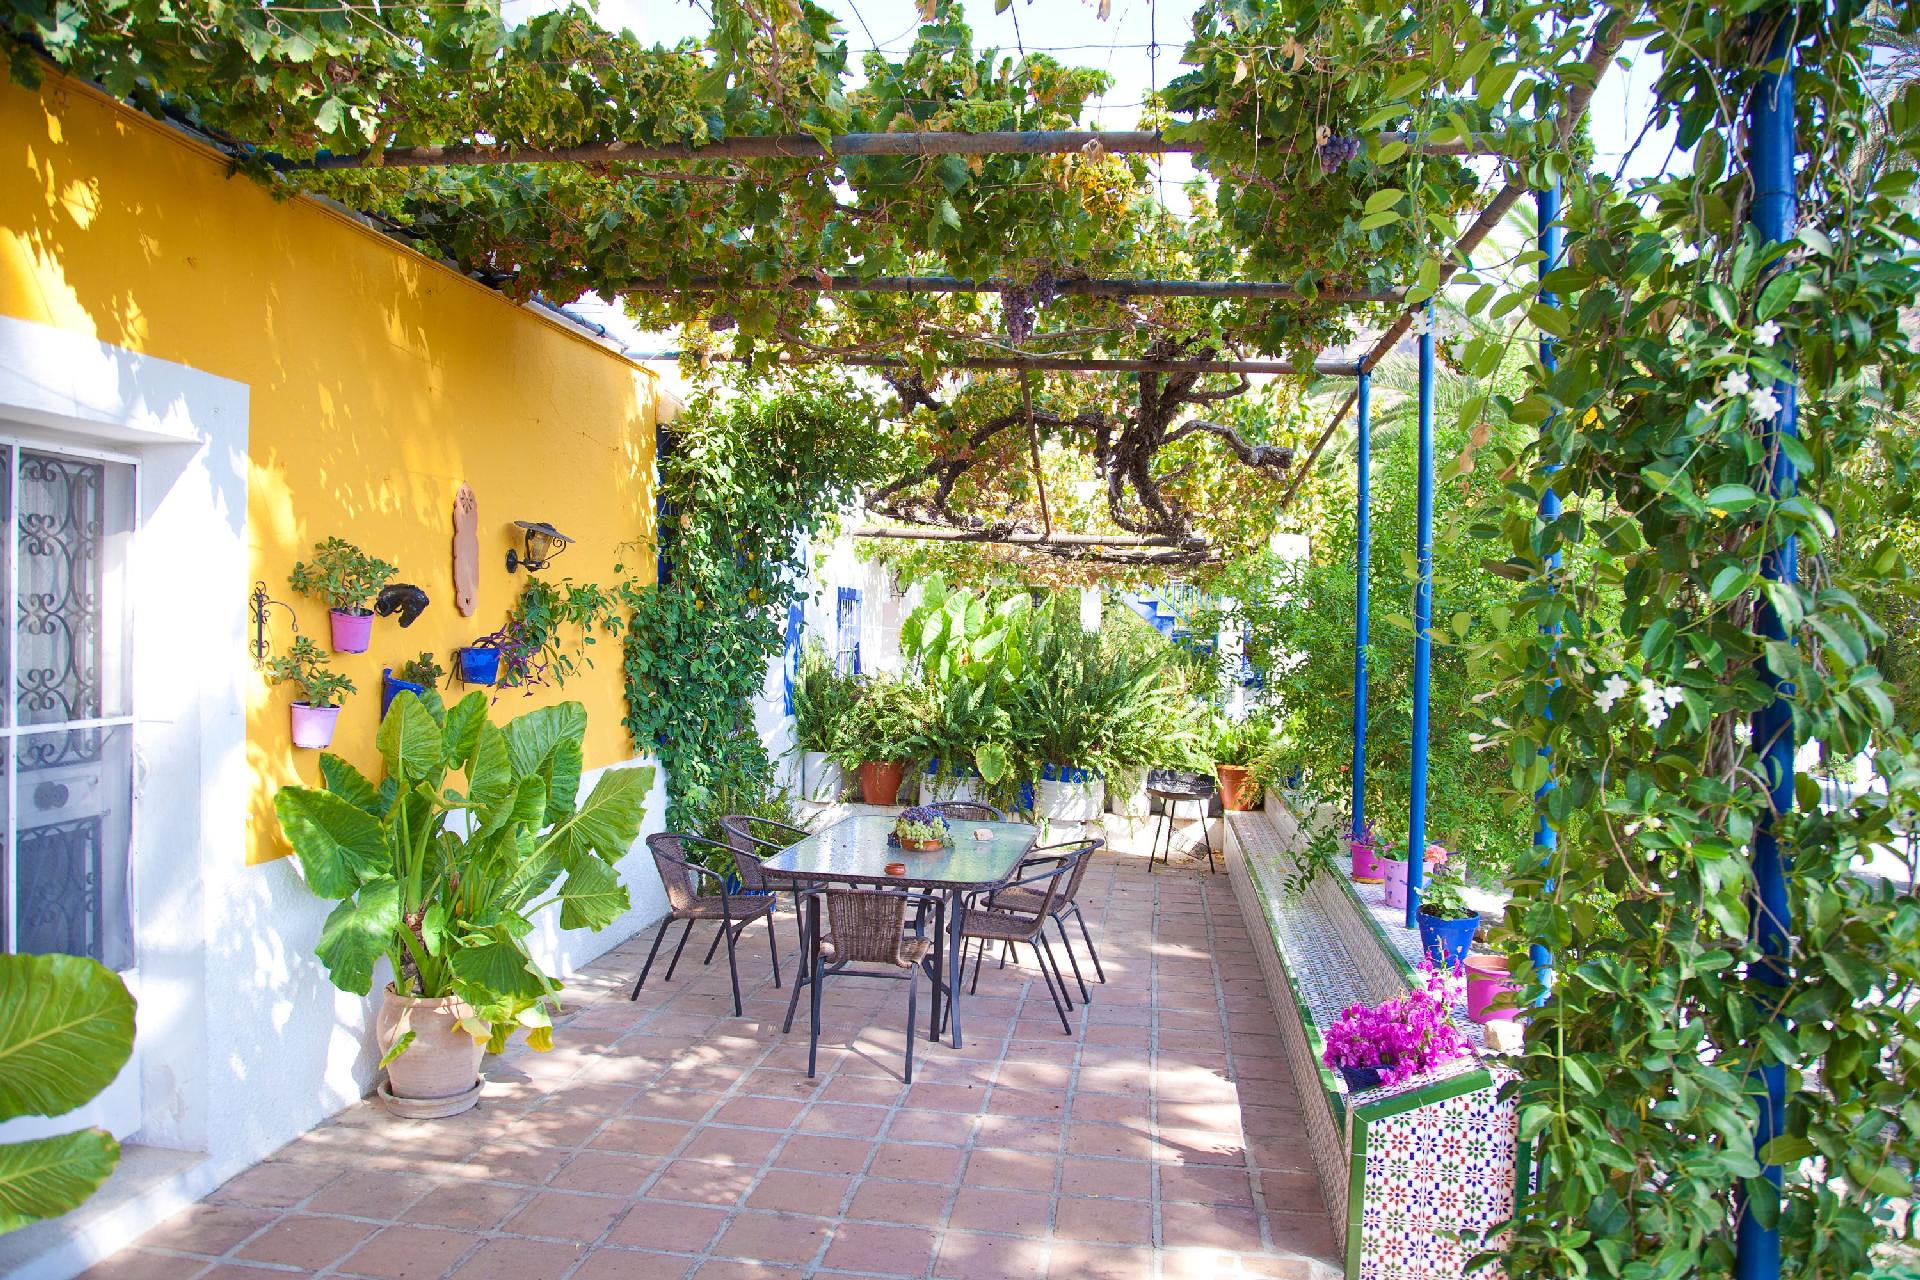 Typisch andalusisches Haus von Orangenplantagen um Ferienhaus in Spanien